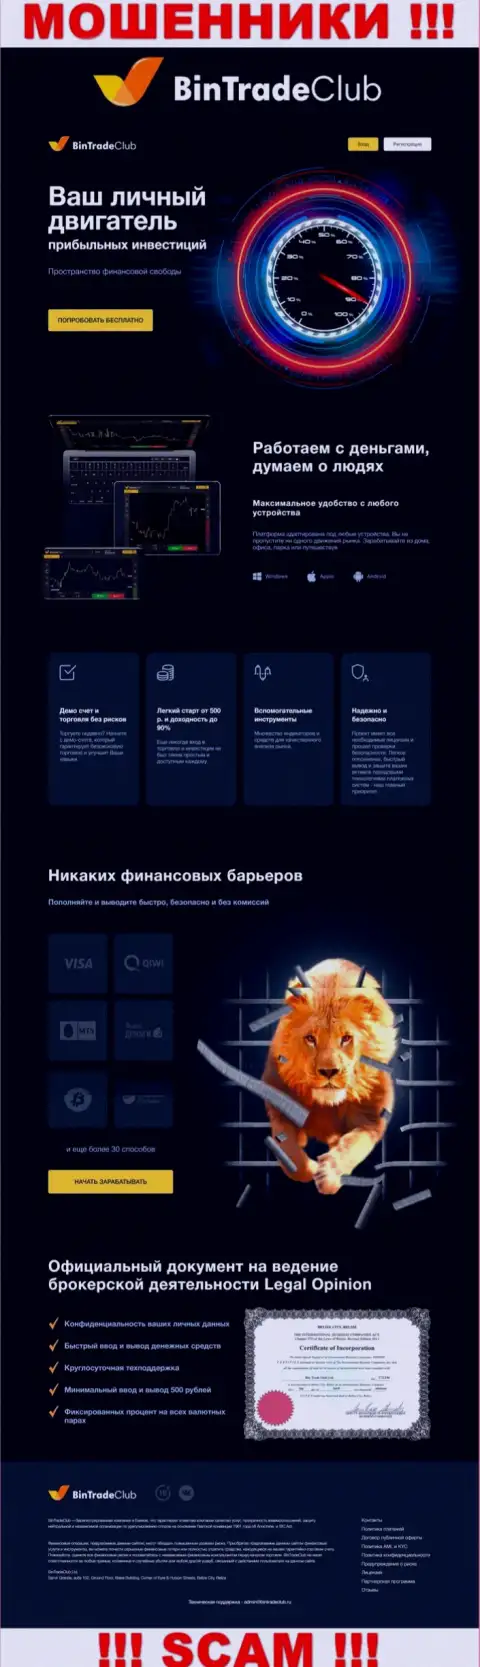 Официальная интернет страничка жульнического проекта BinTradeClub Ru